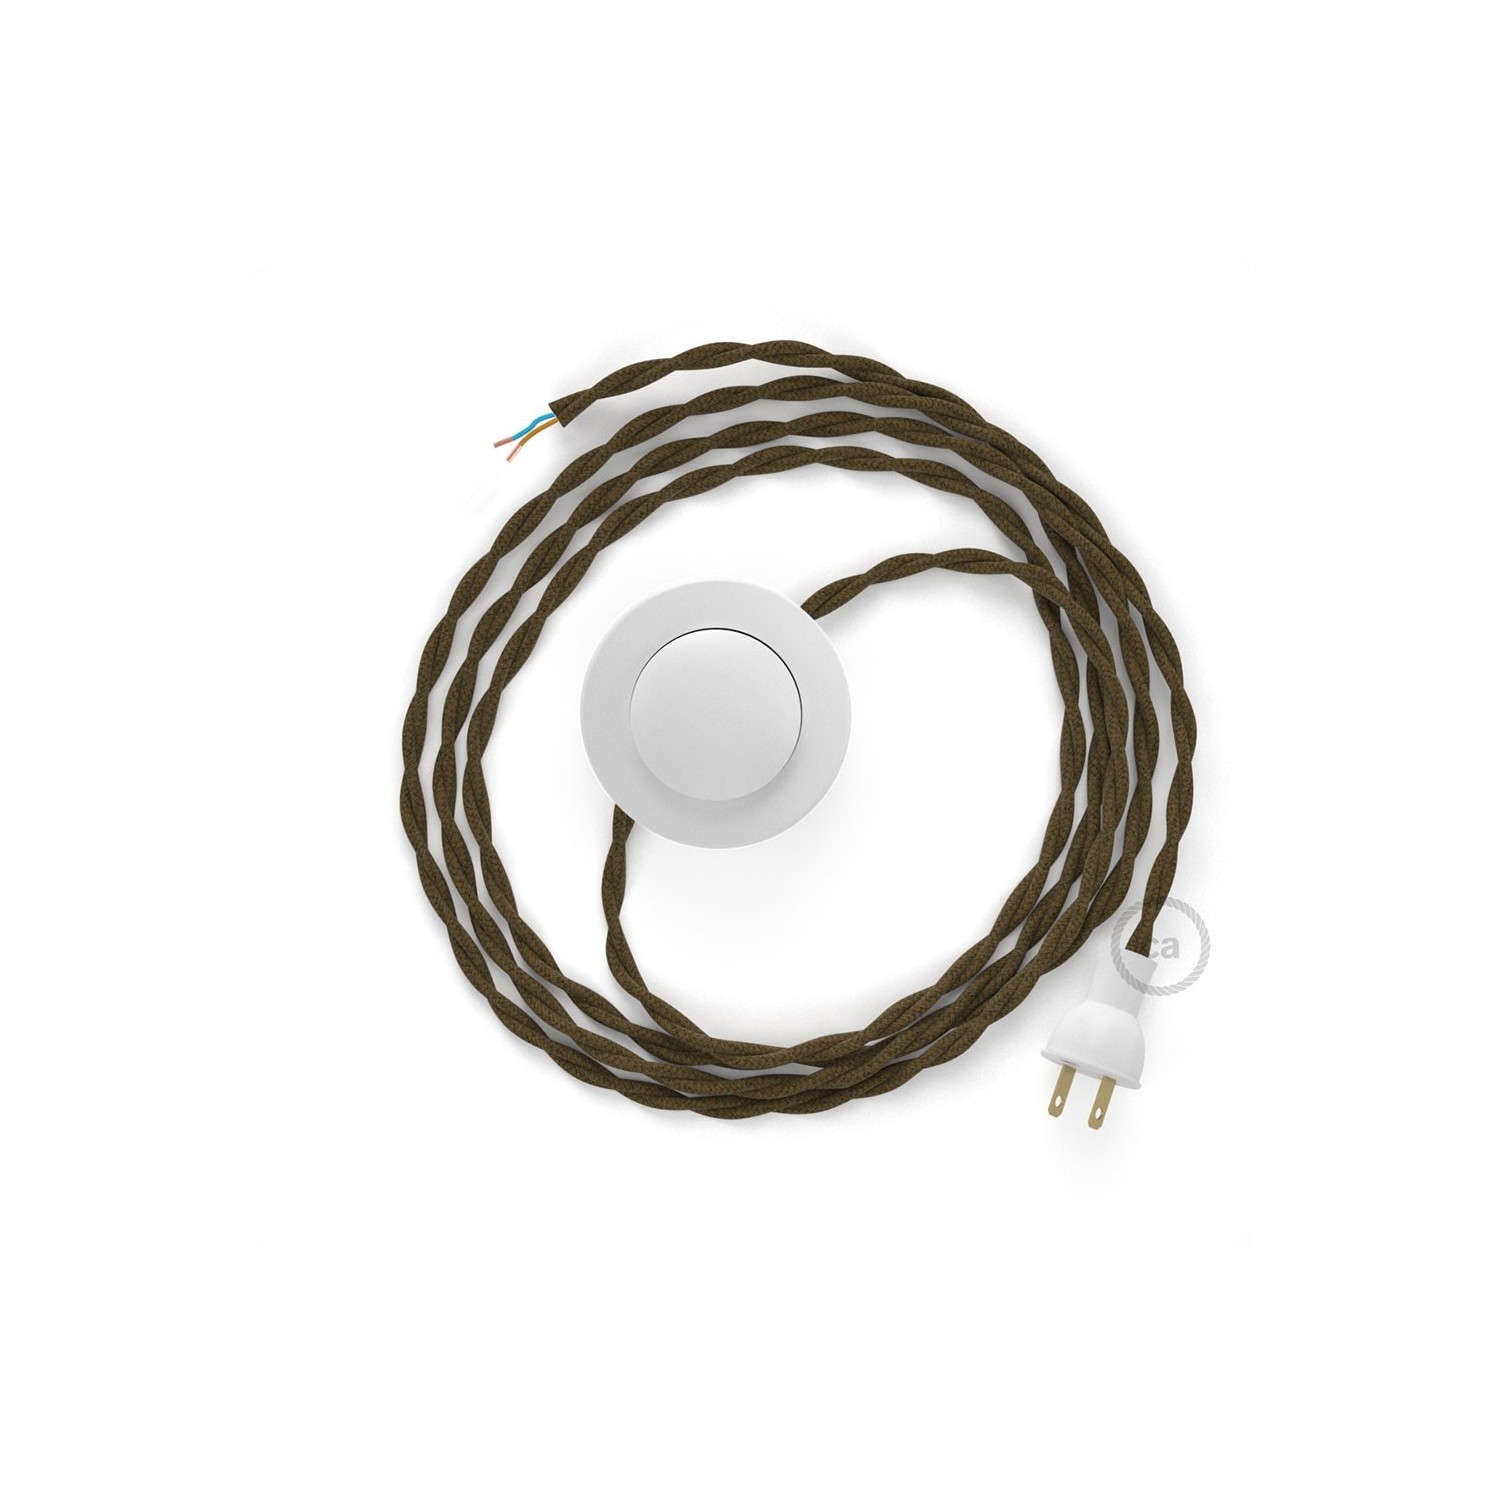 Cableado para lámpara de piso, cable TC13 Algodón Café 3 m. Elige tu el color de la clavija y del interruptor!